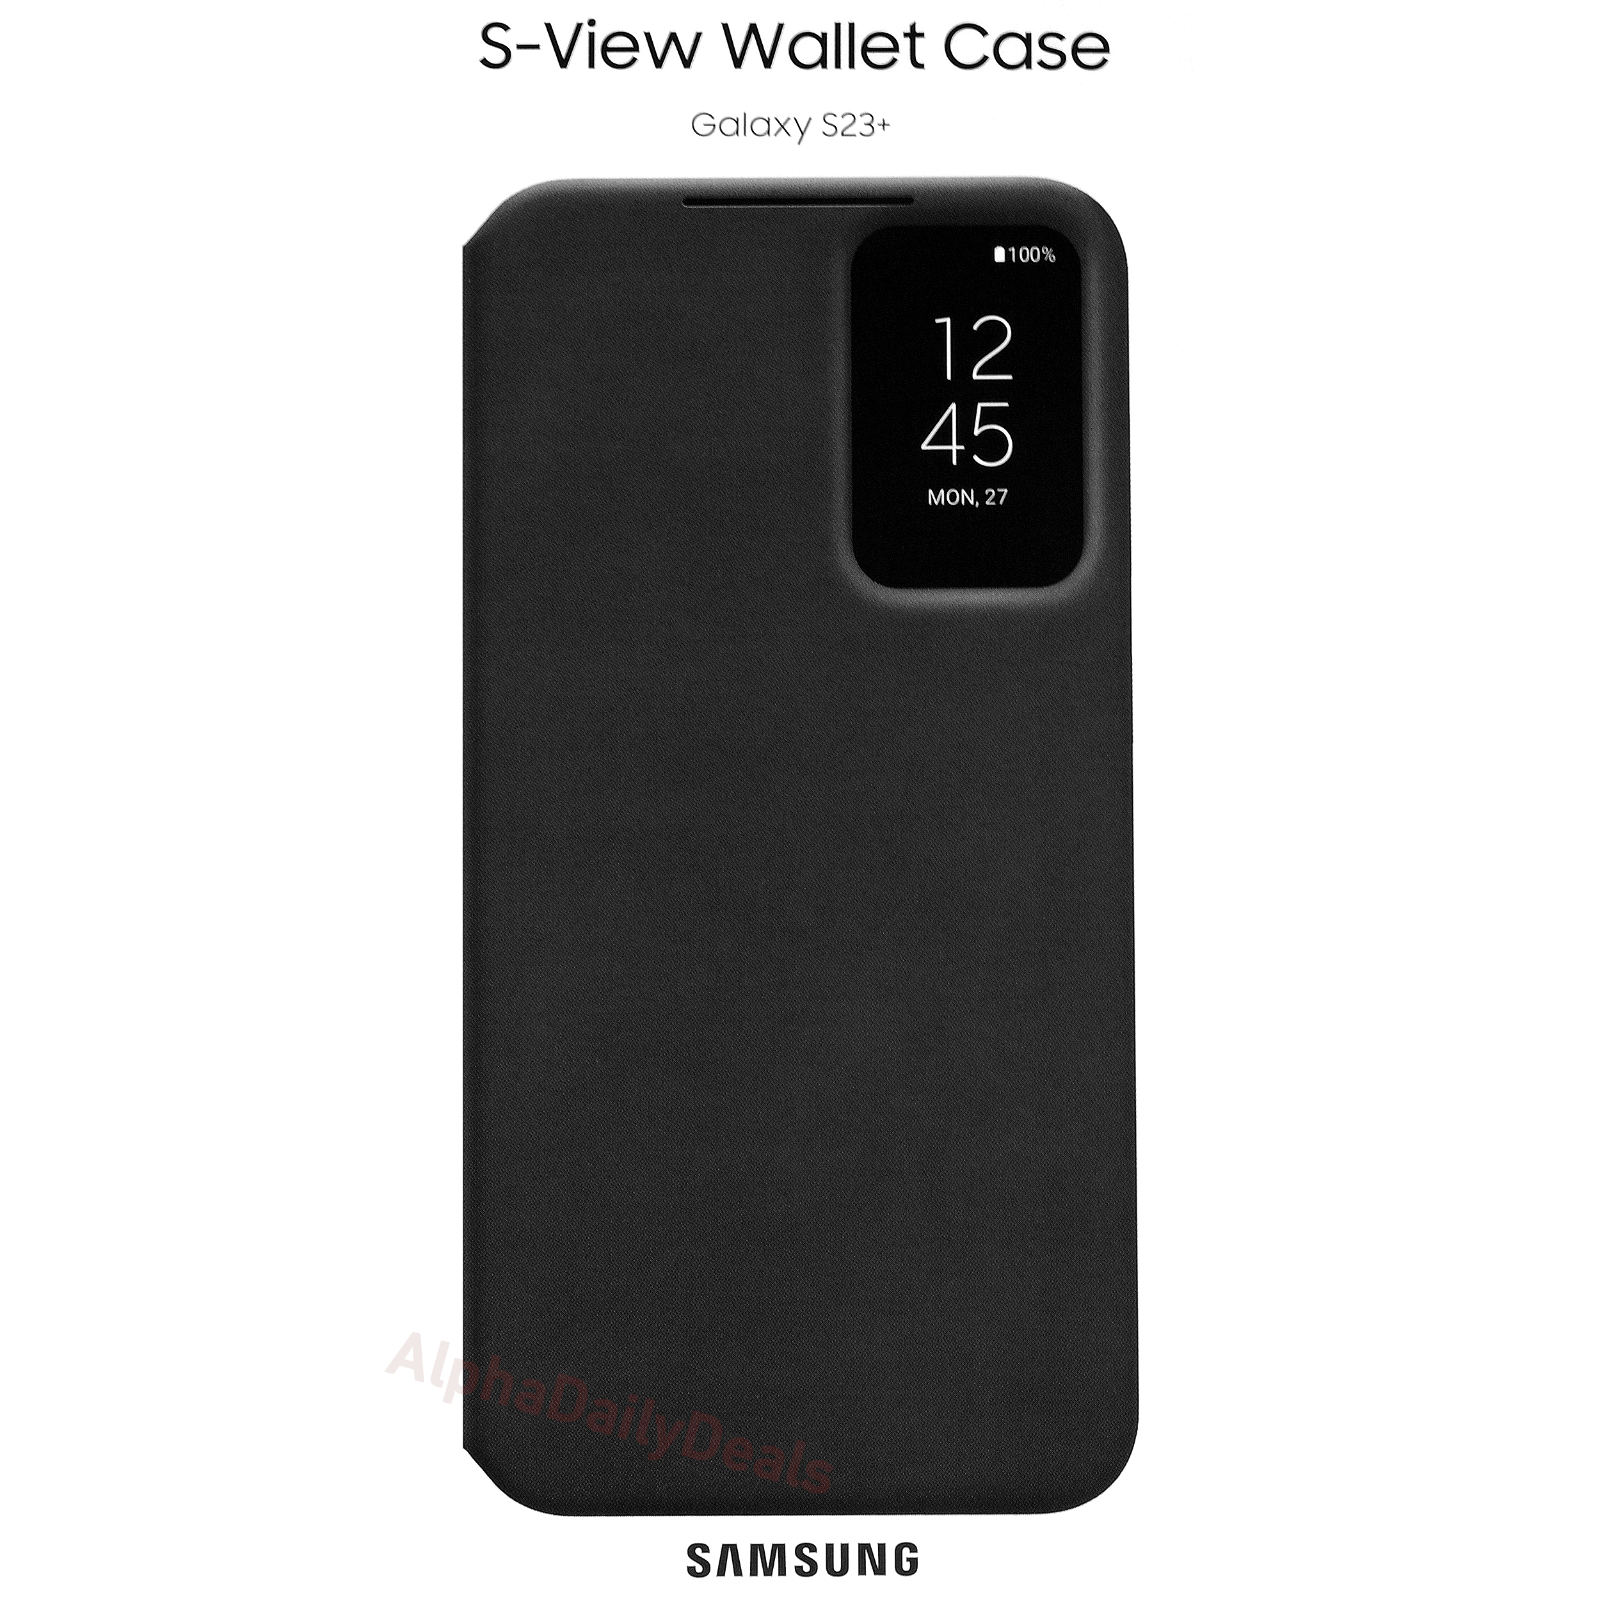 Original Samsung Galaxy S23+ S-View Wallet Folio Case Black